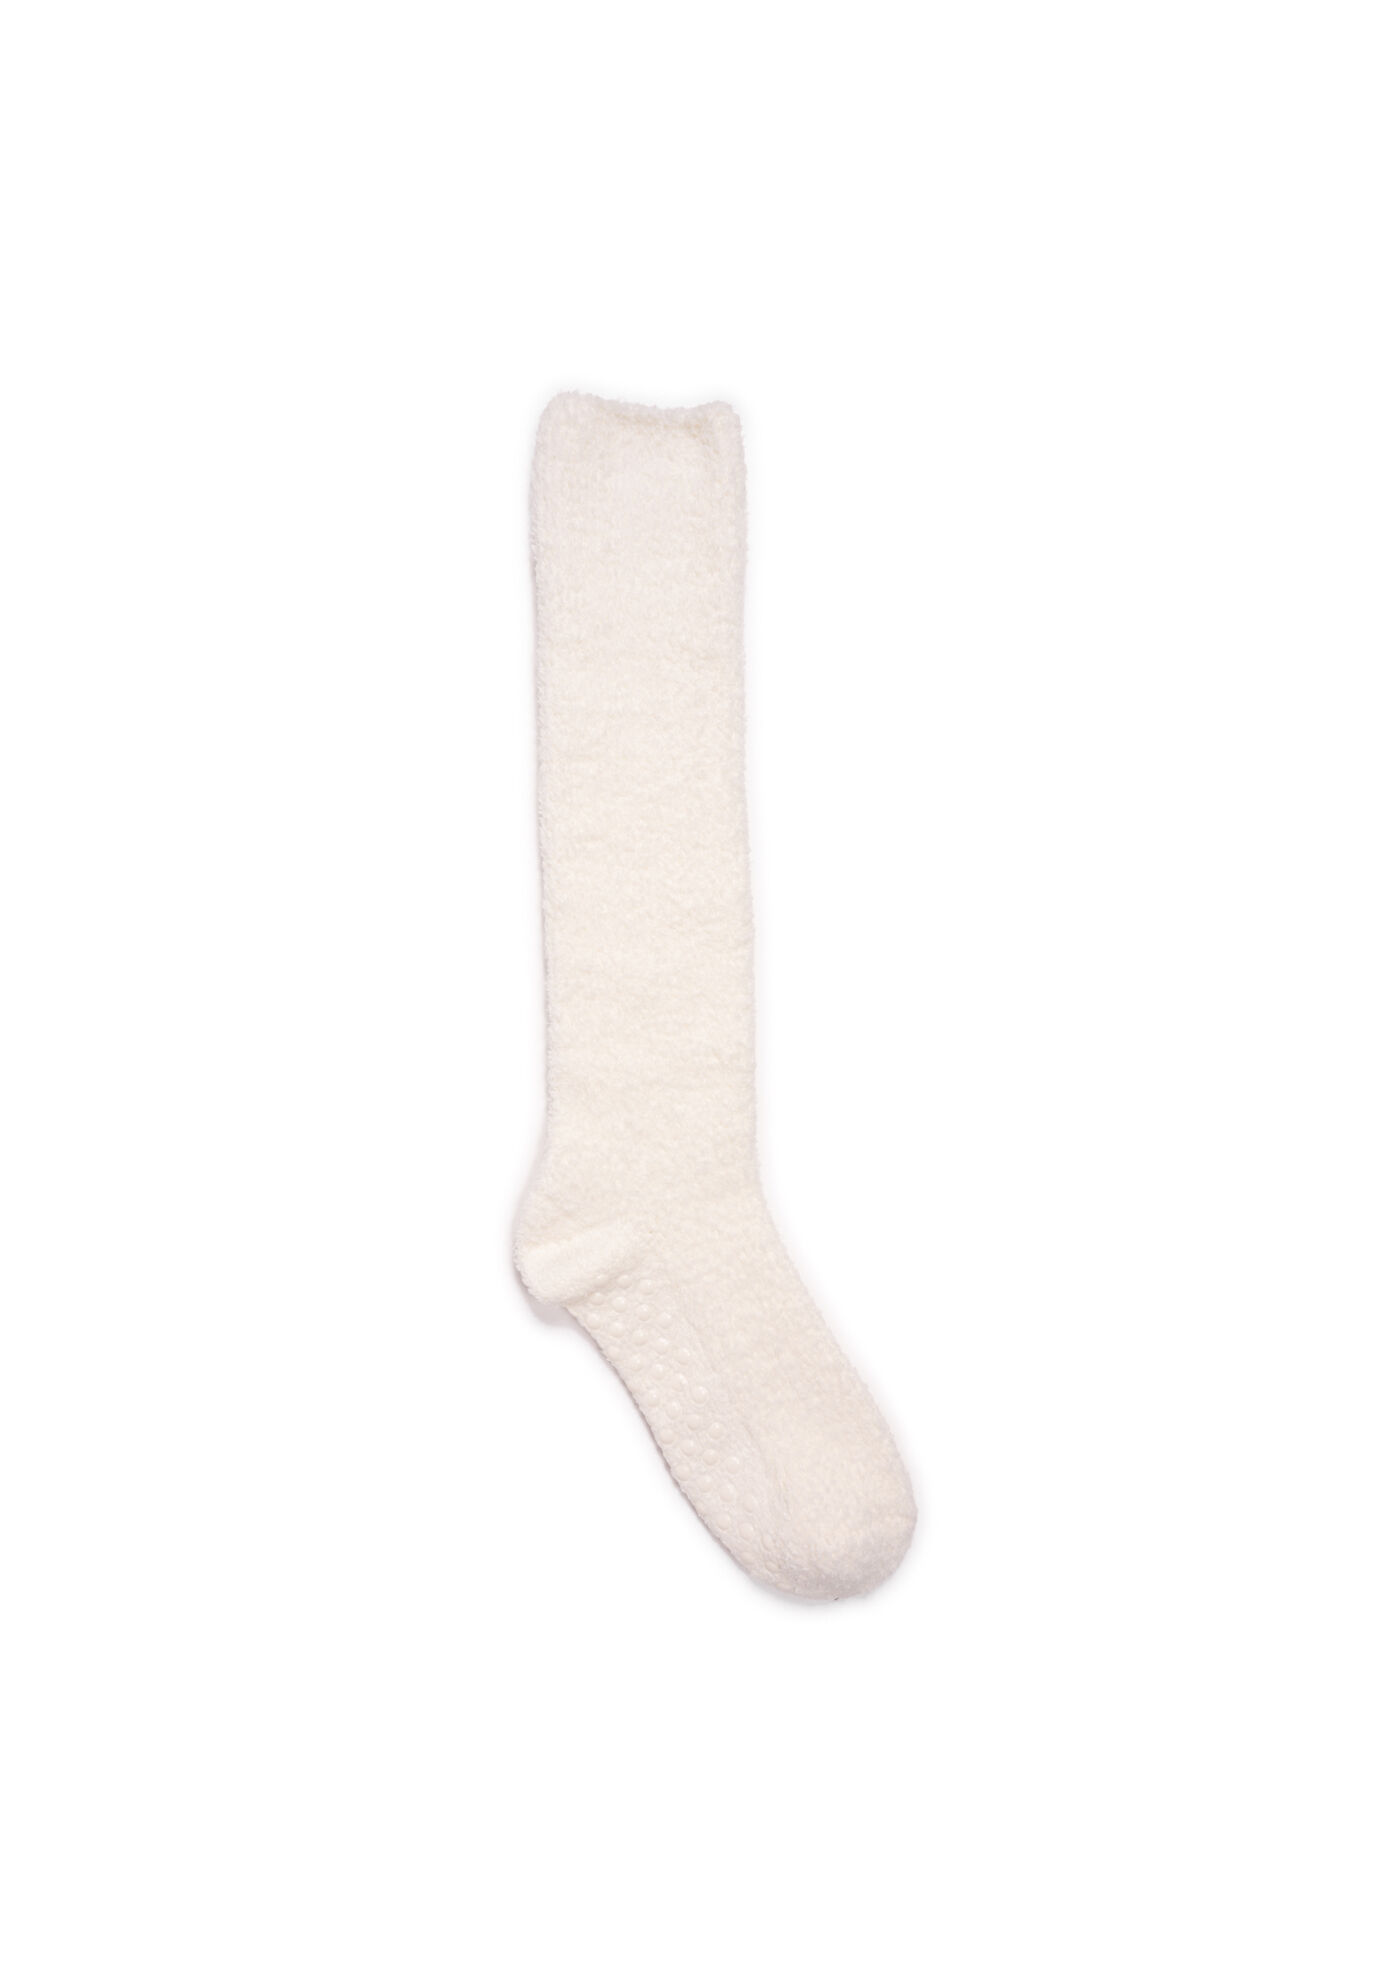 Chenille Slipper Socks - 1 Pair | Support Plus